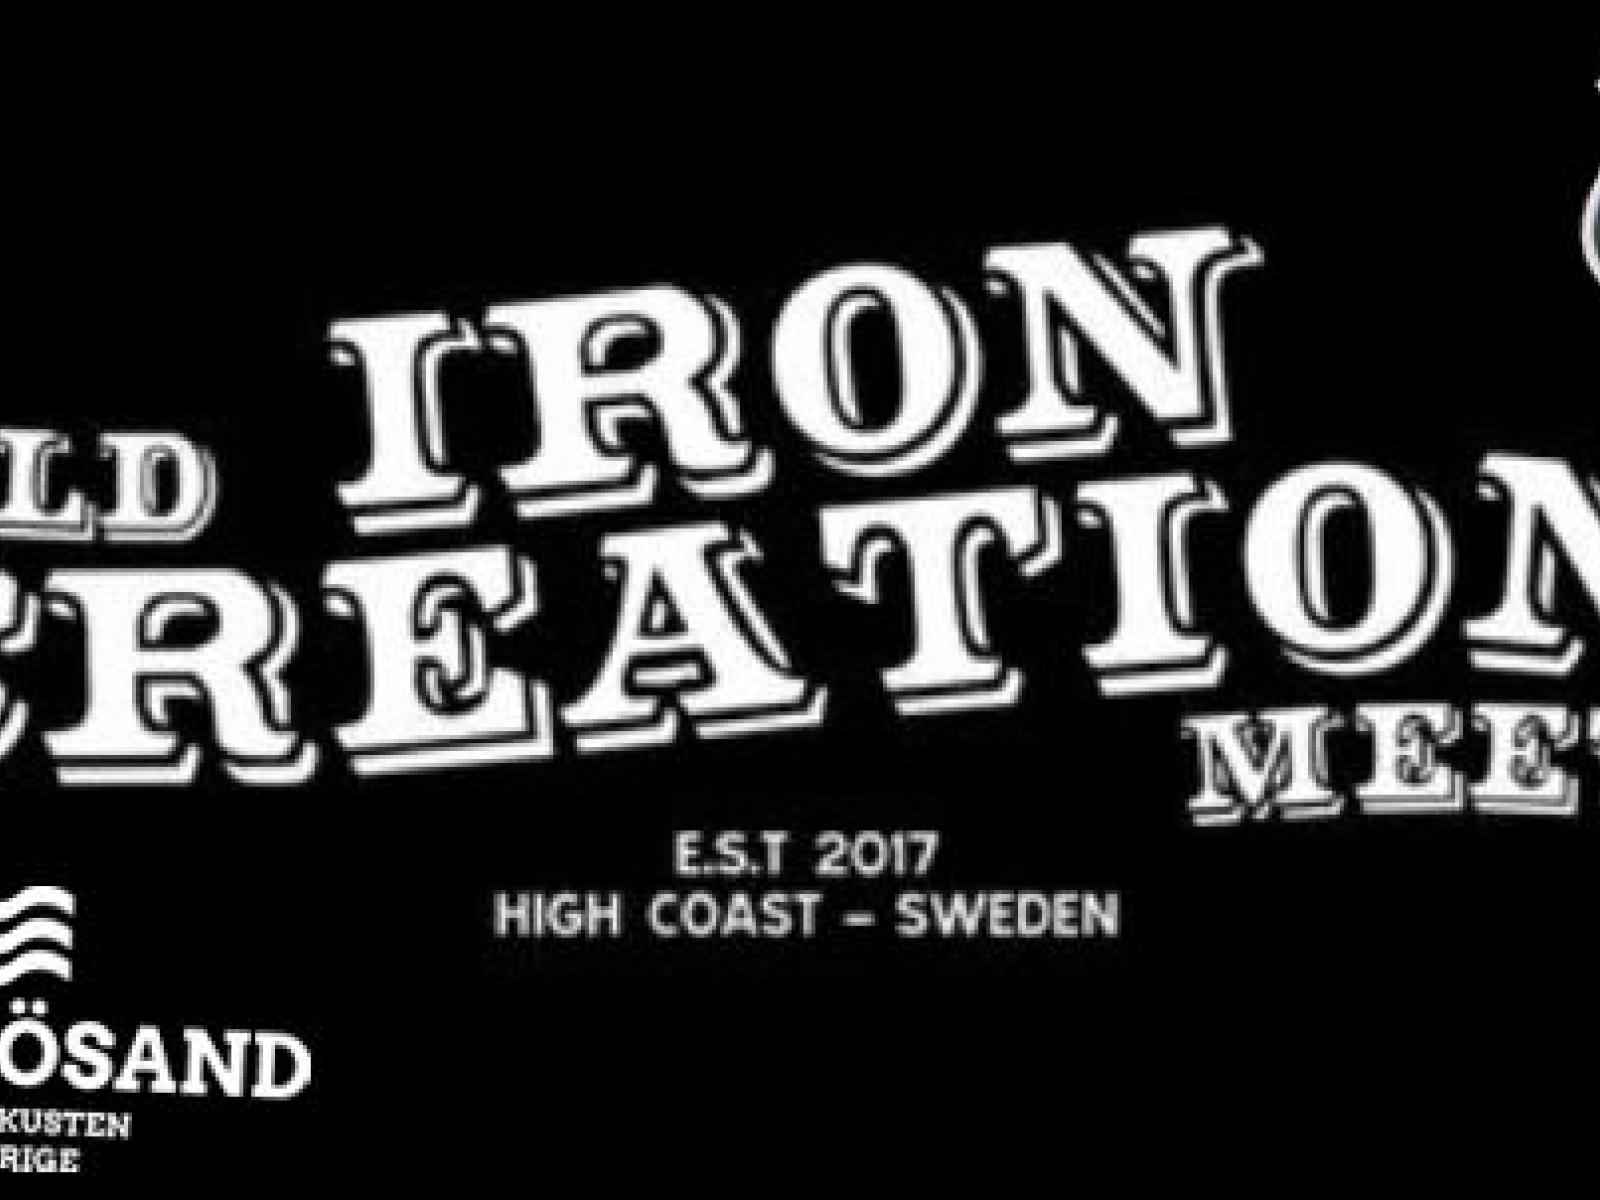 Old Iron Creation Meet 2022